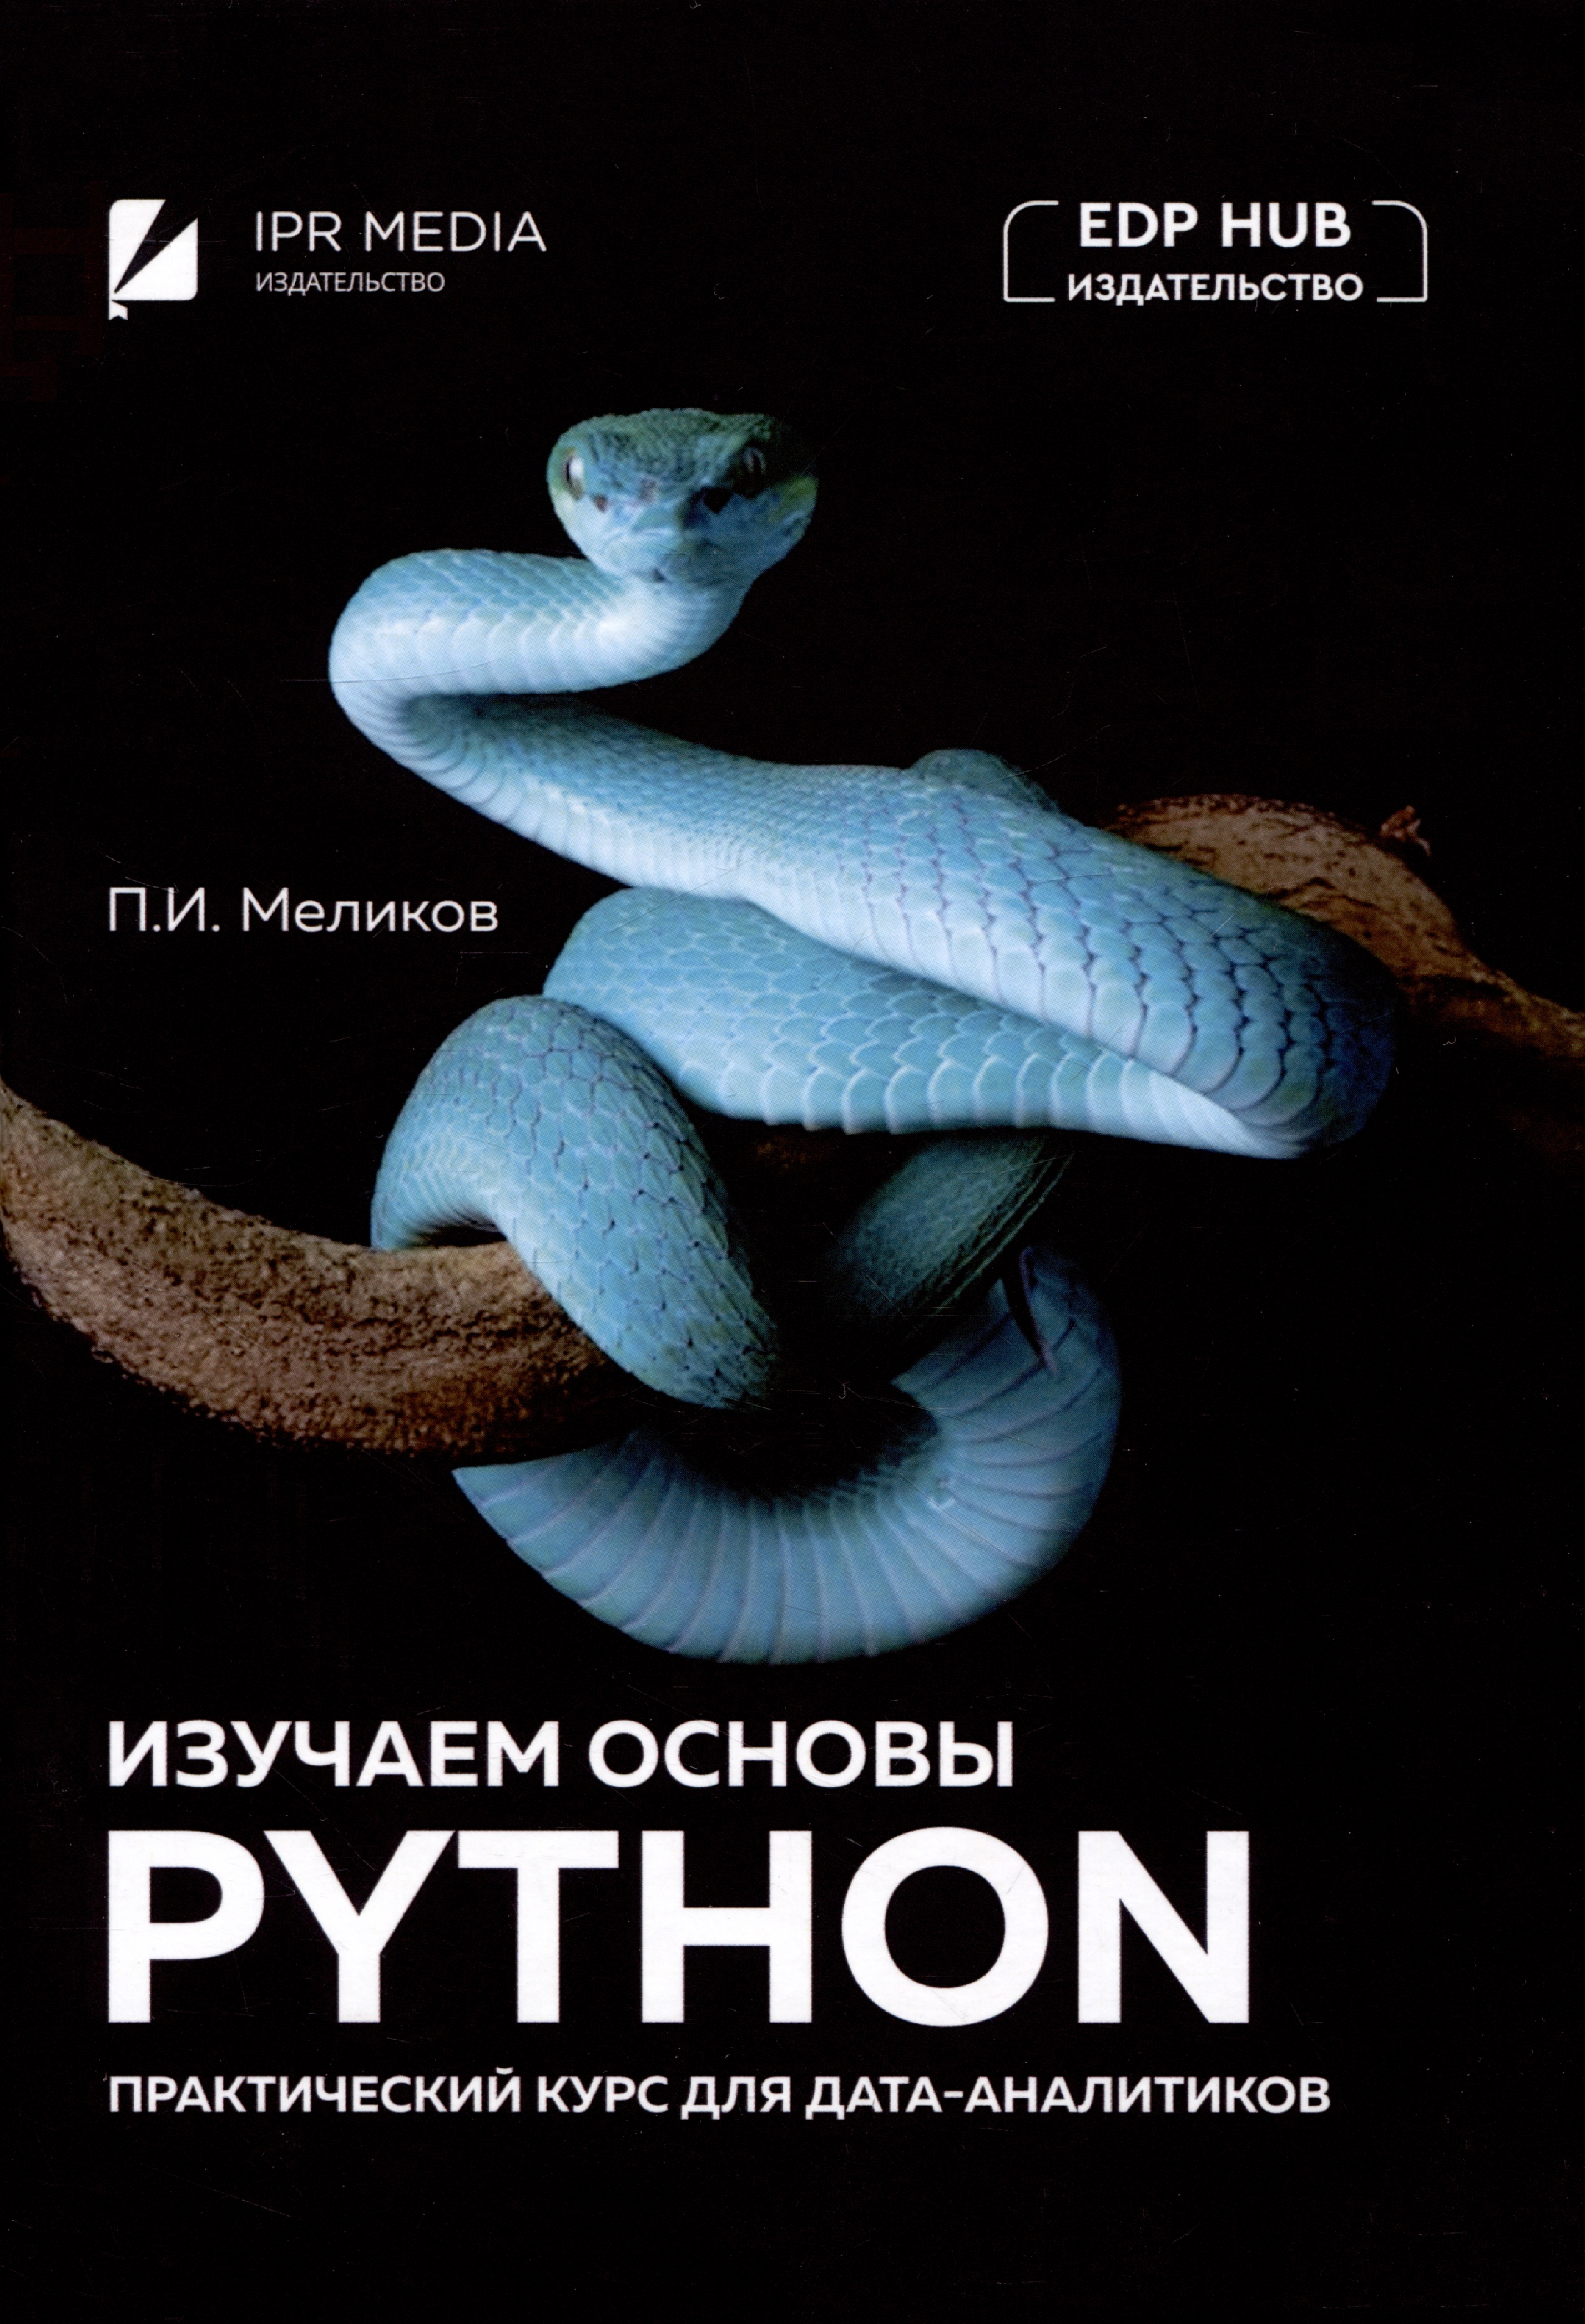 Меликов Павел Ильич Изучаем основы Python. Практический курс для дата-аналитиков плас дж python для сложных задач наука о данных и машинное обучение